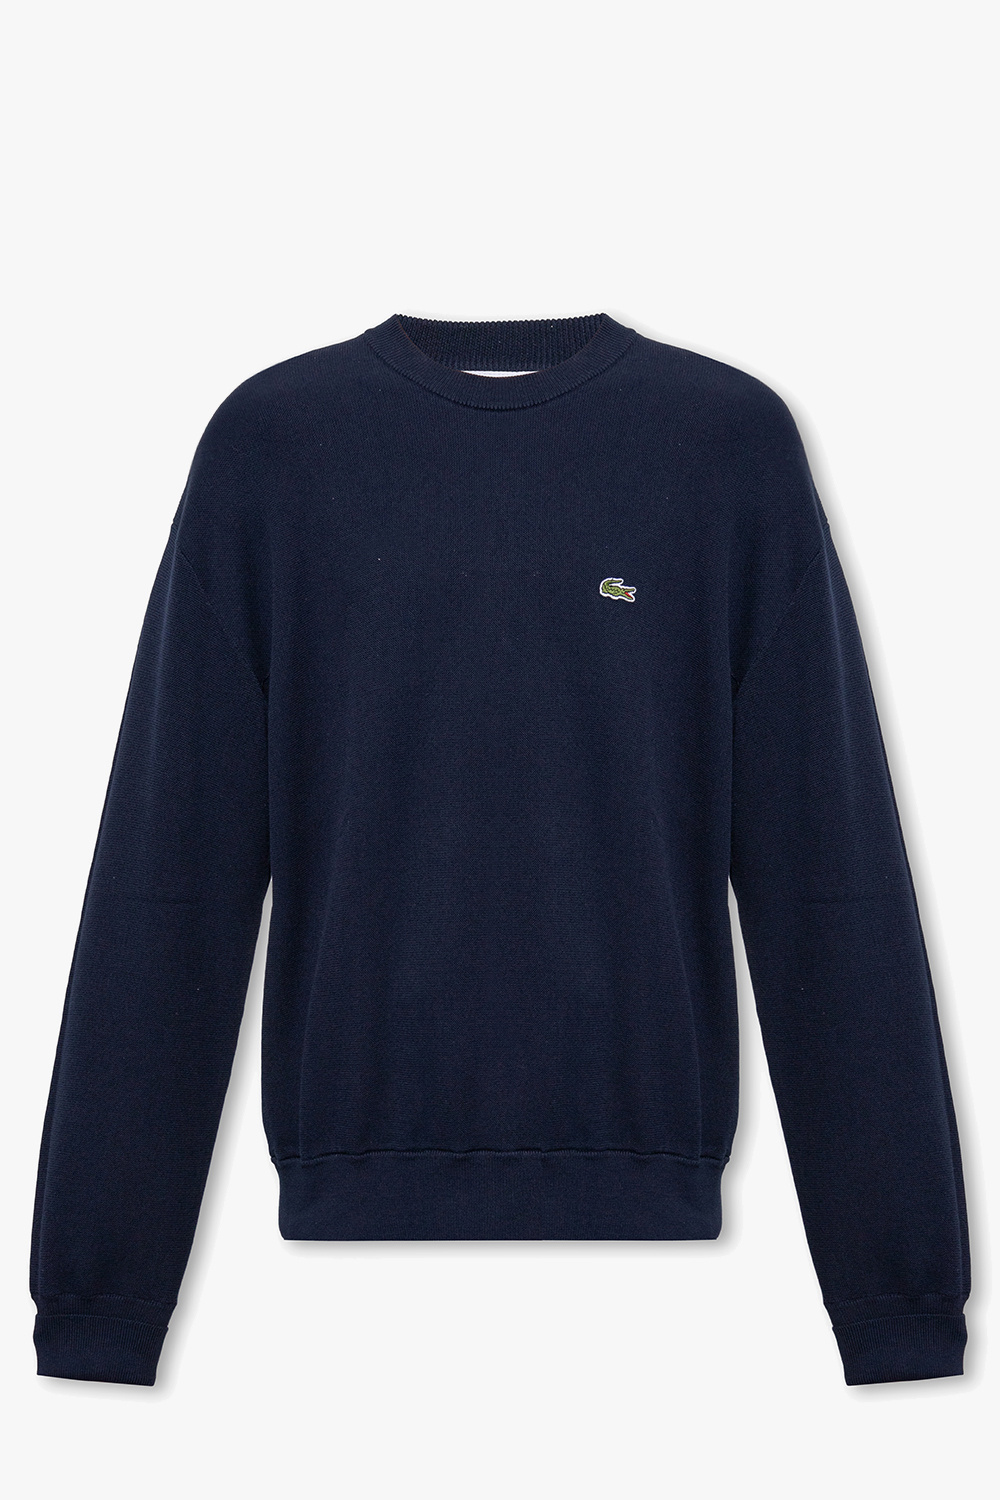 trække Shah Fængsling Lacoste Sweater with logo | Men's Clothing | Vitkac